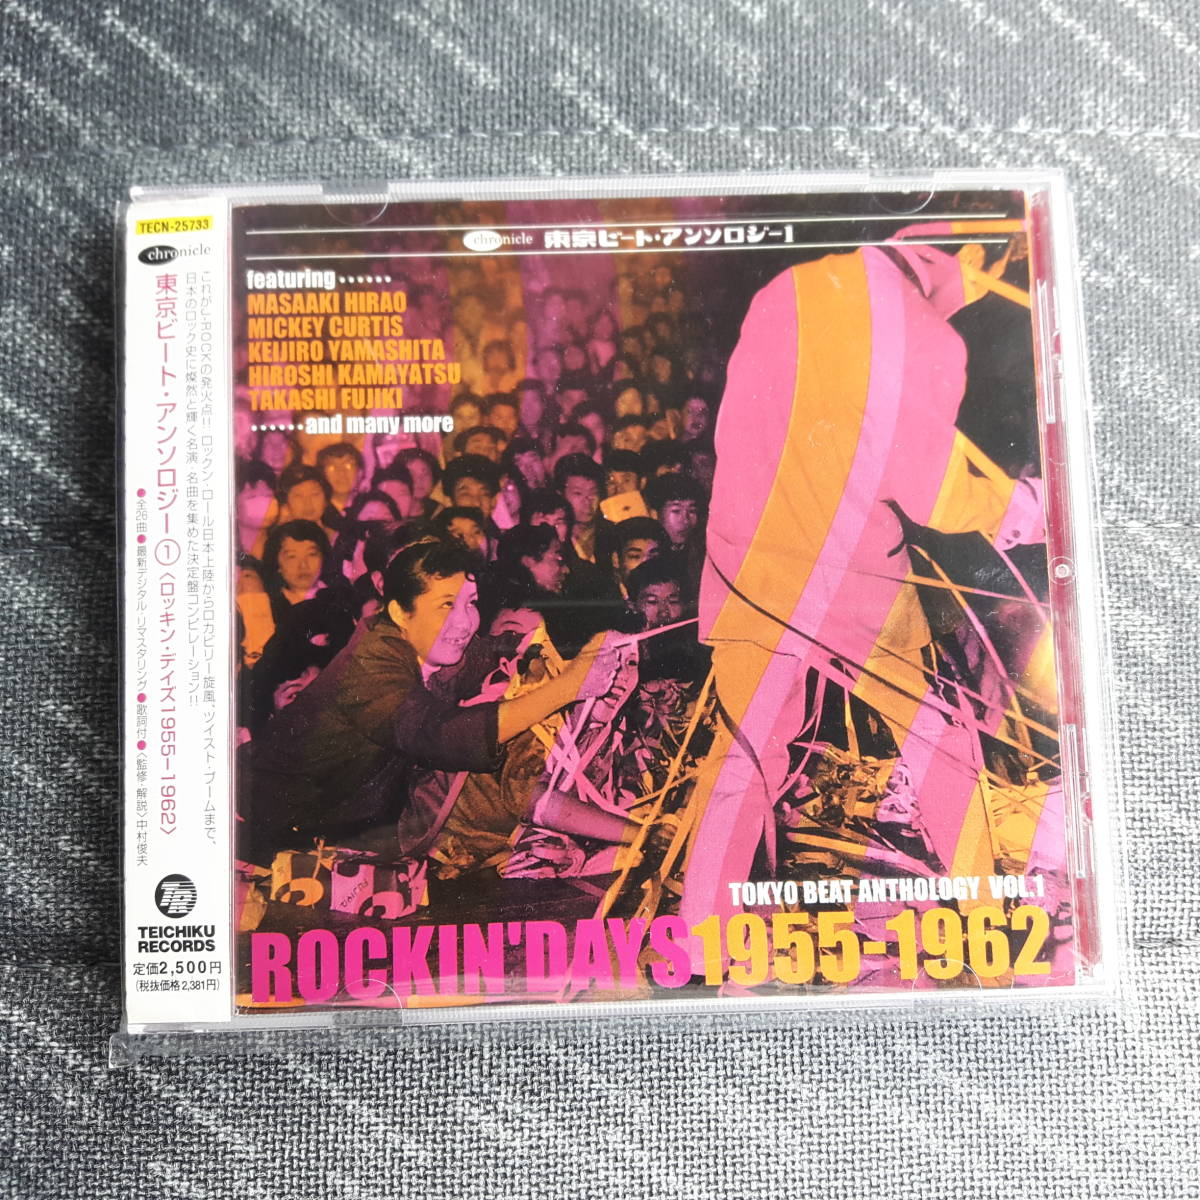  Tokyo свекла * антология CD альбом ROCKIN*DAYS 1955-1962 контри-рок рисовое поле плата ... крем soda черный Cat's tsu